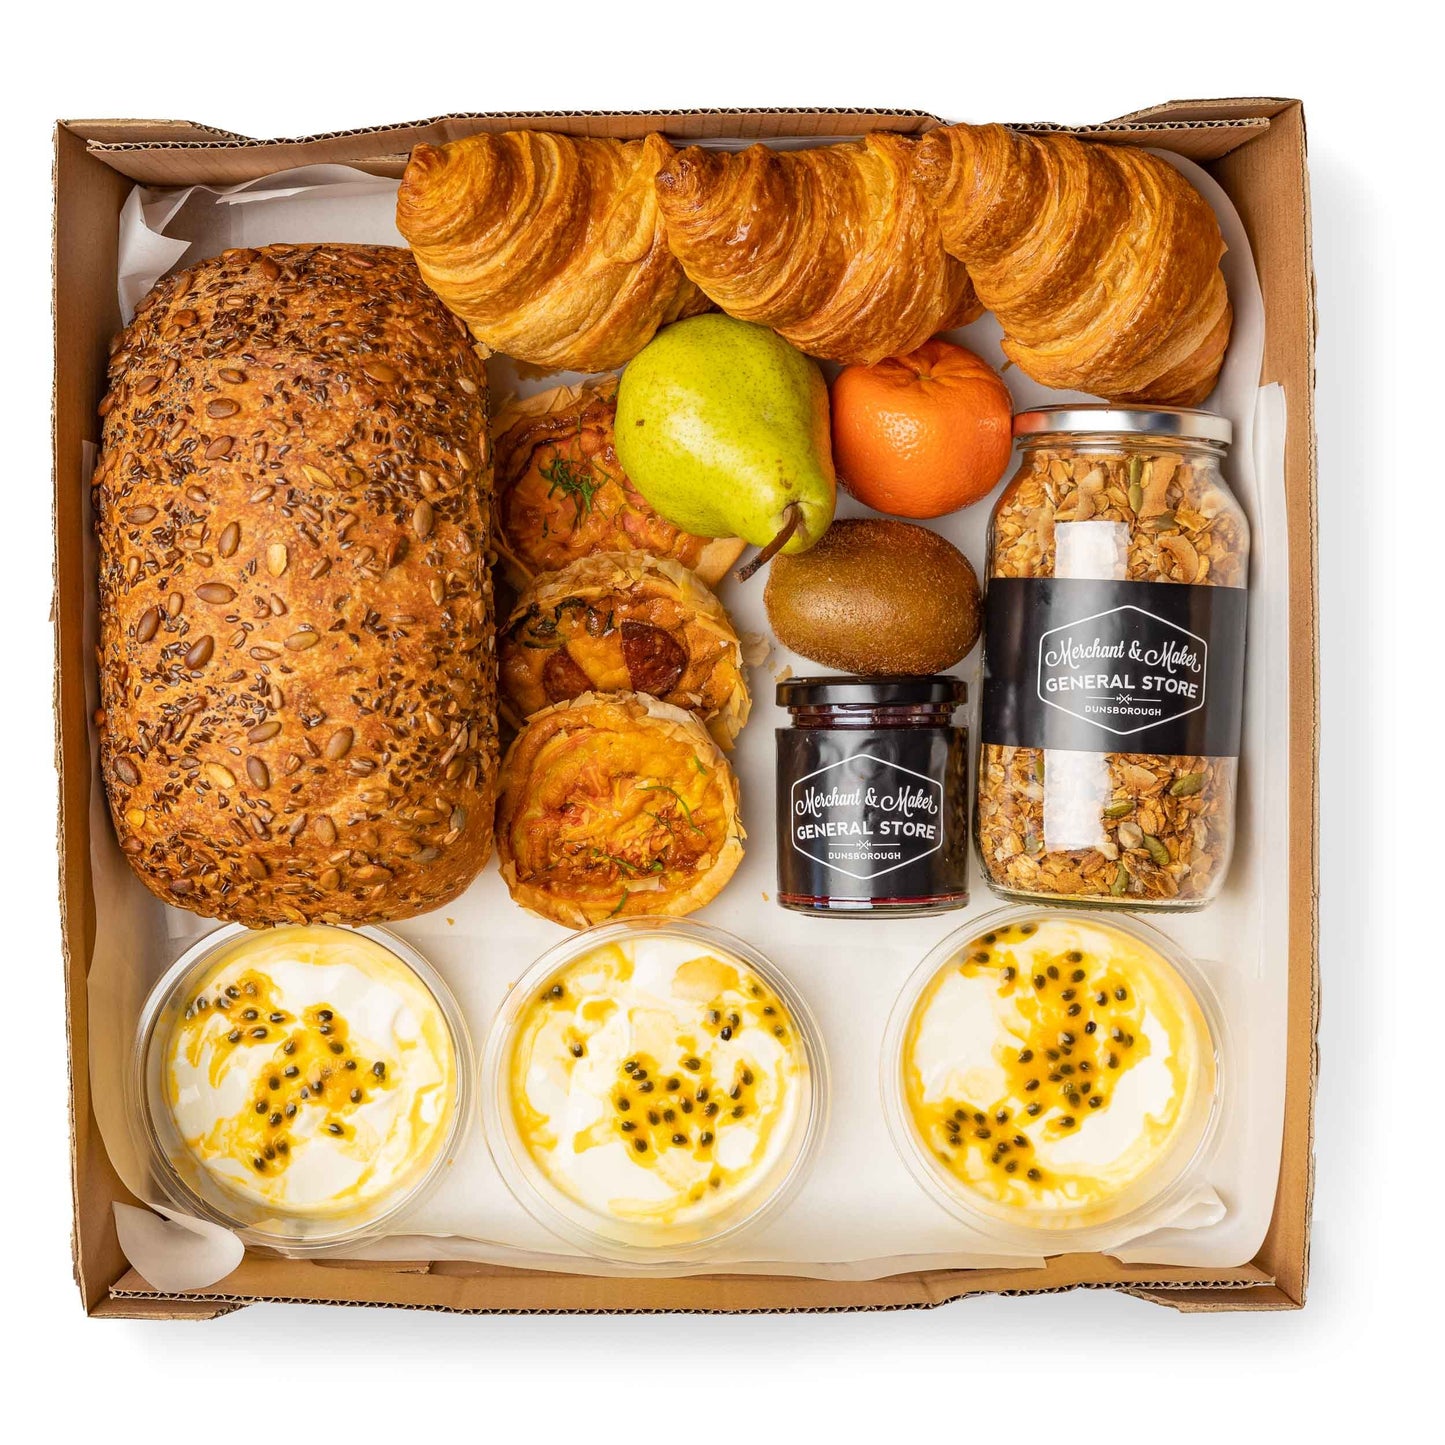 Merchant & Maker Gourmet Breakfast Box